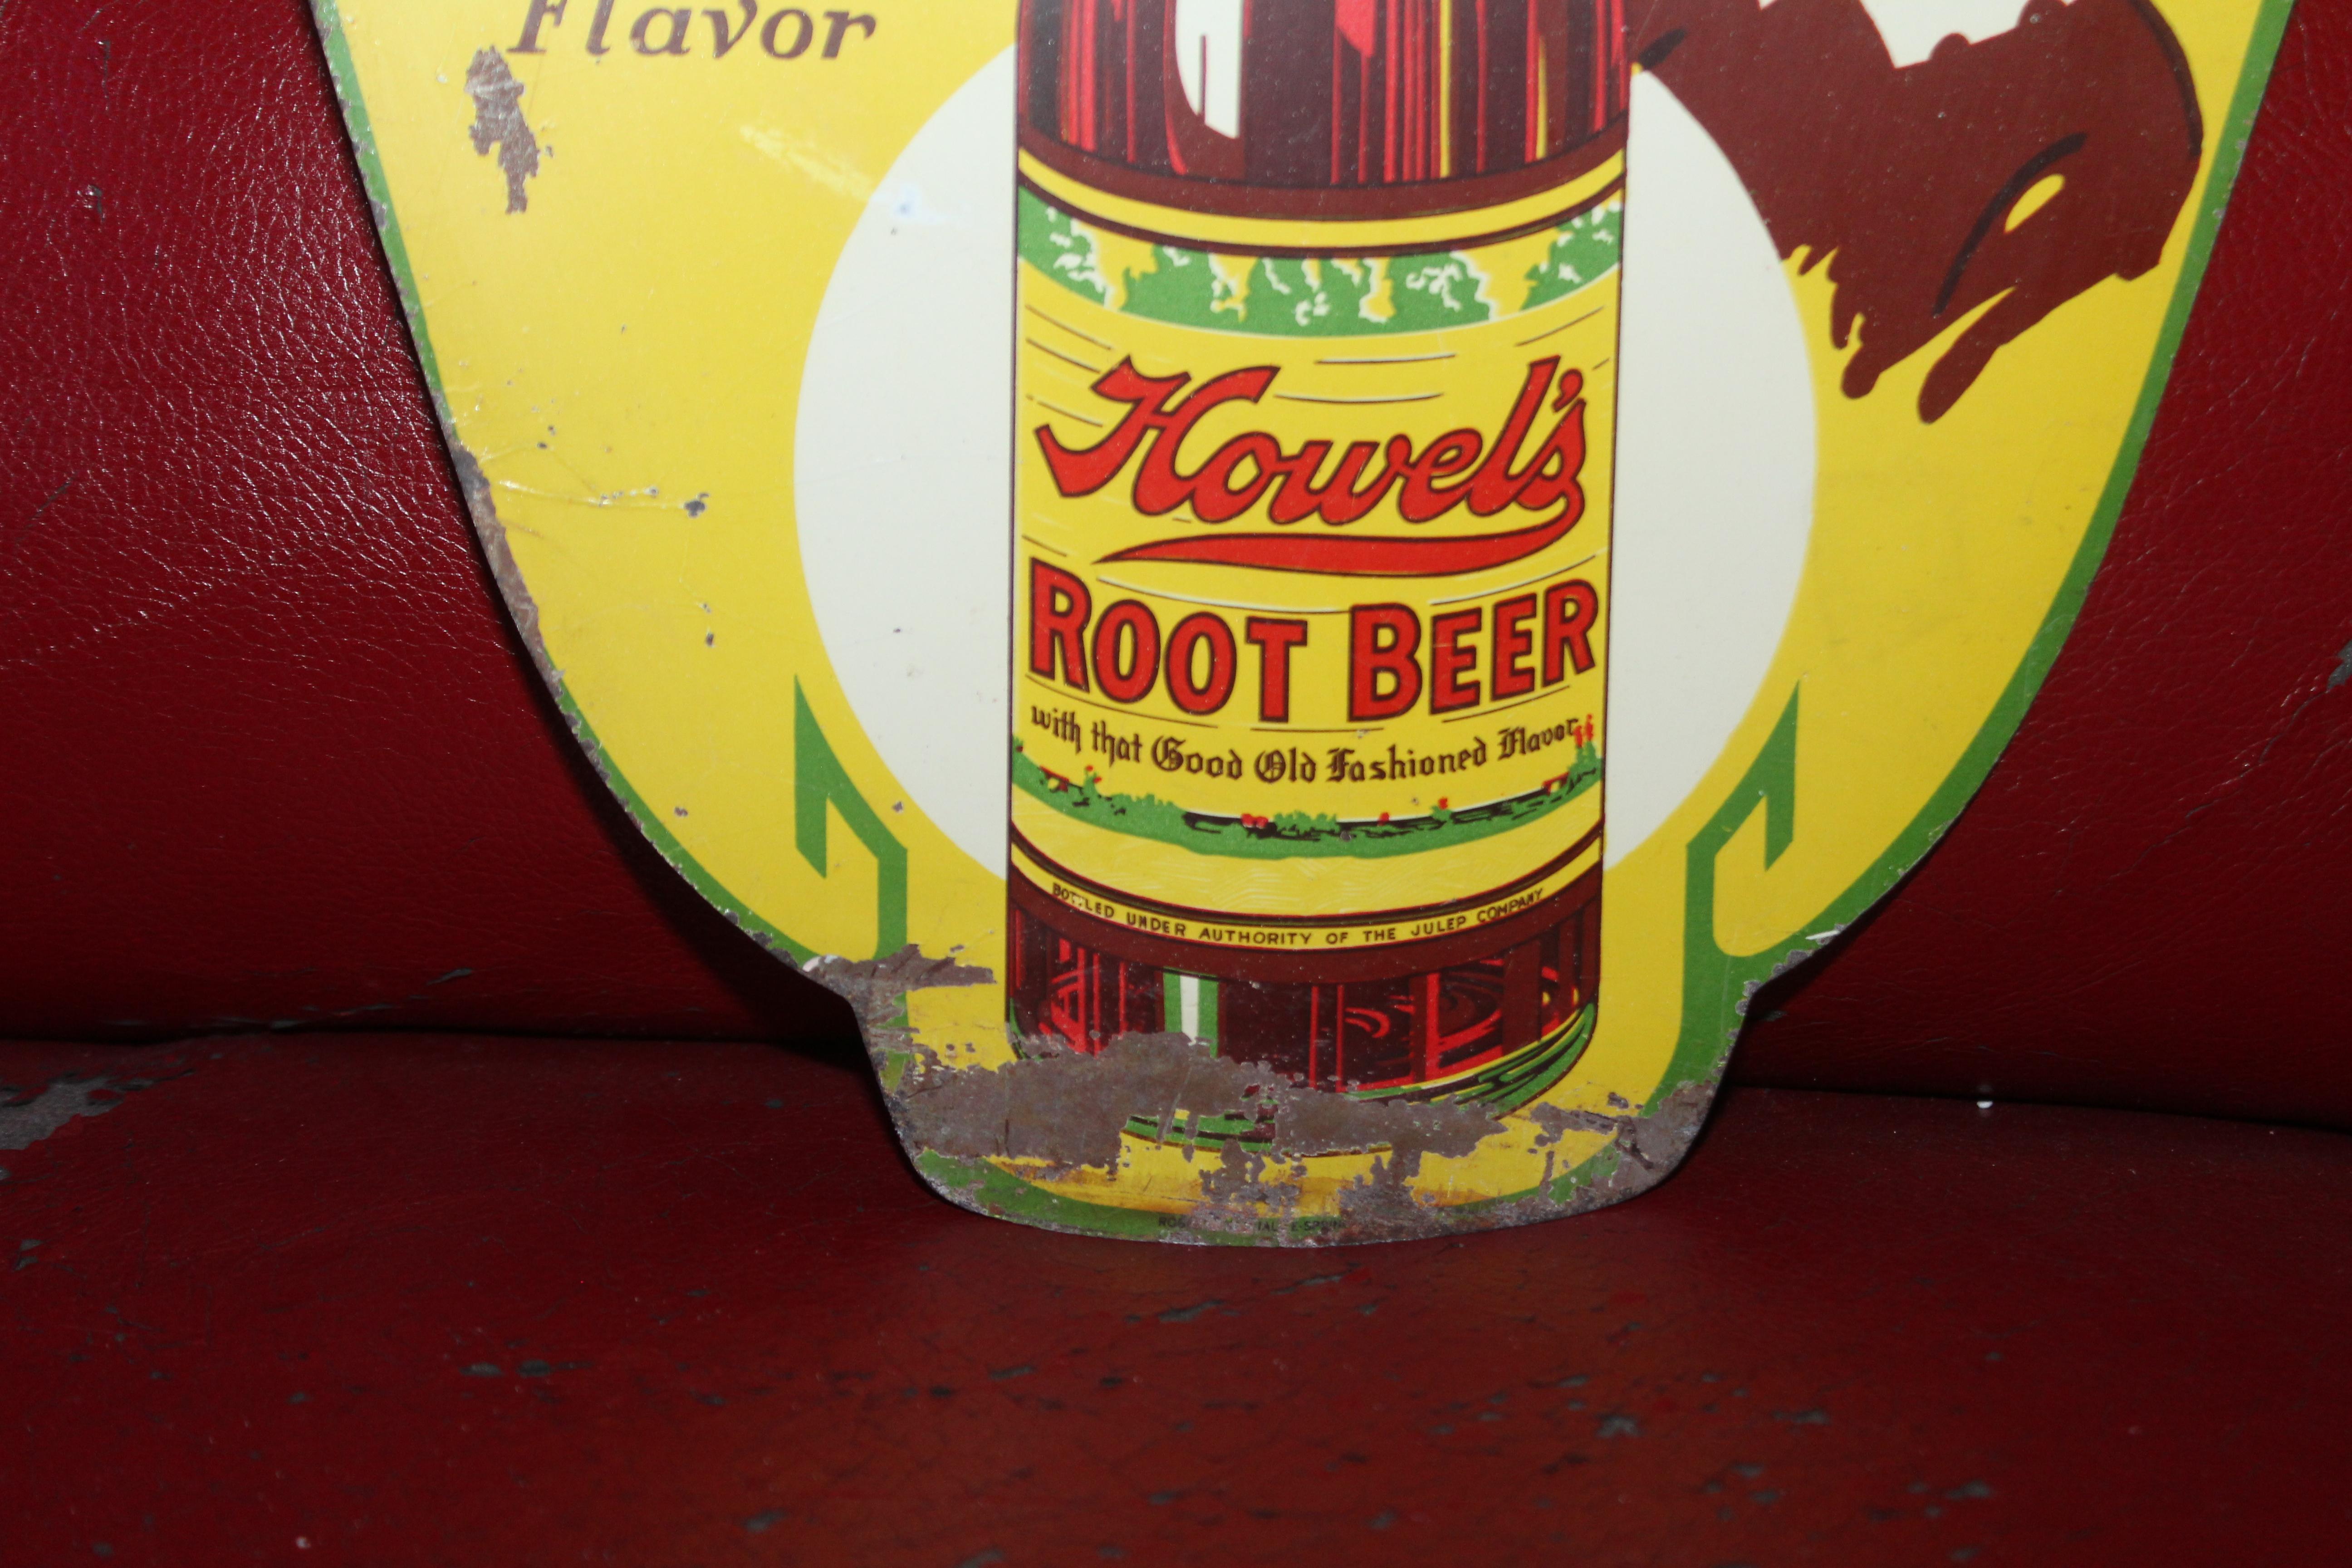 howel's root beer sign